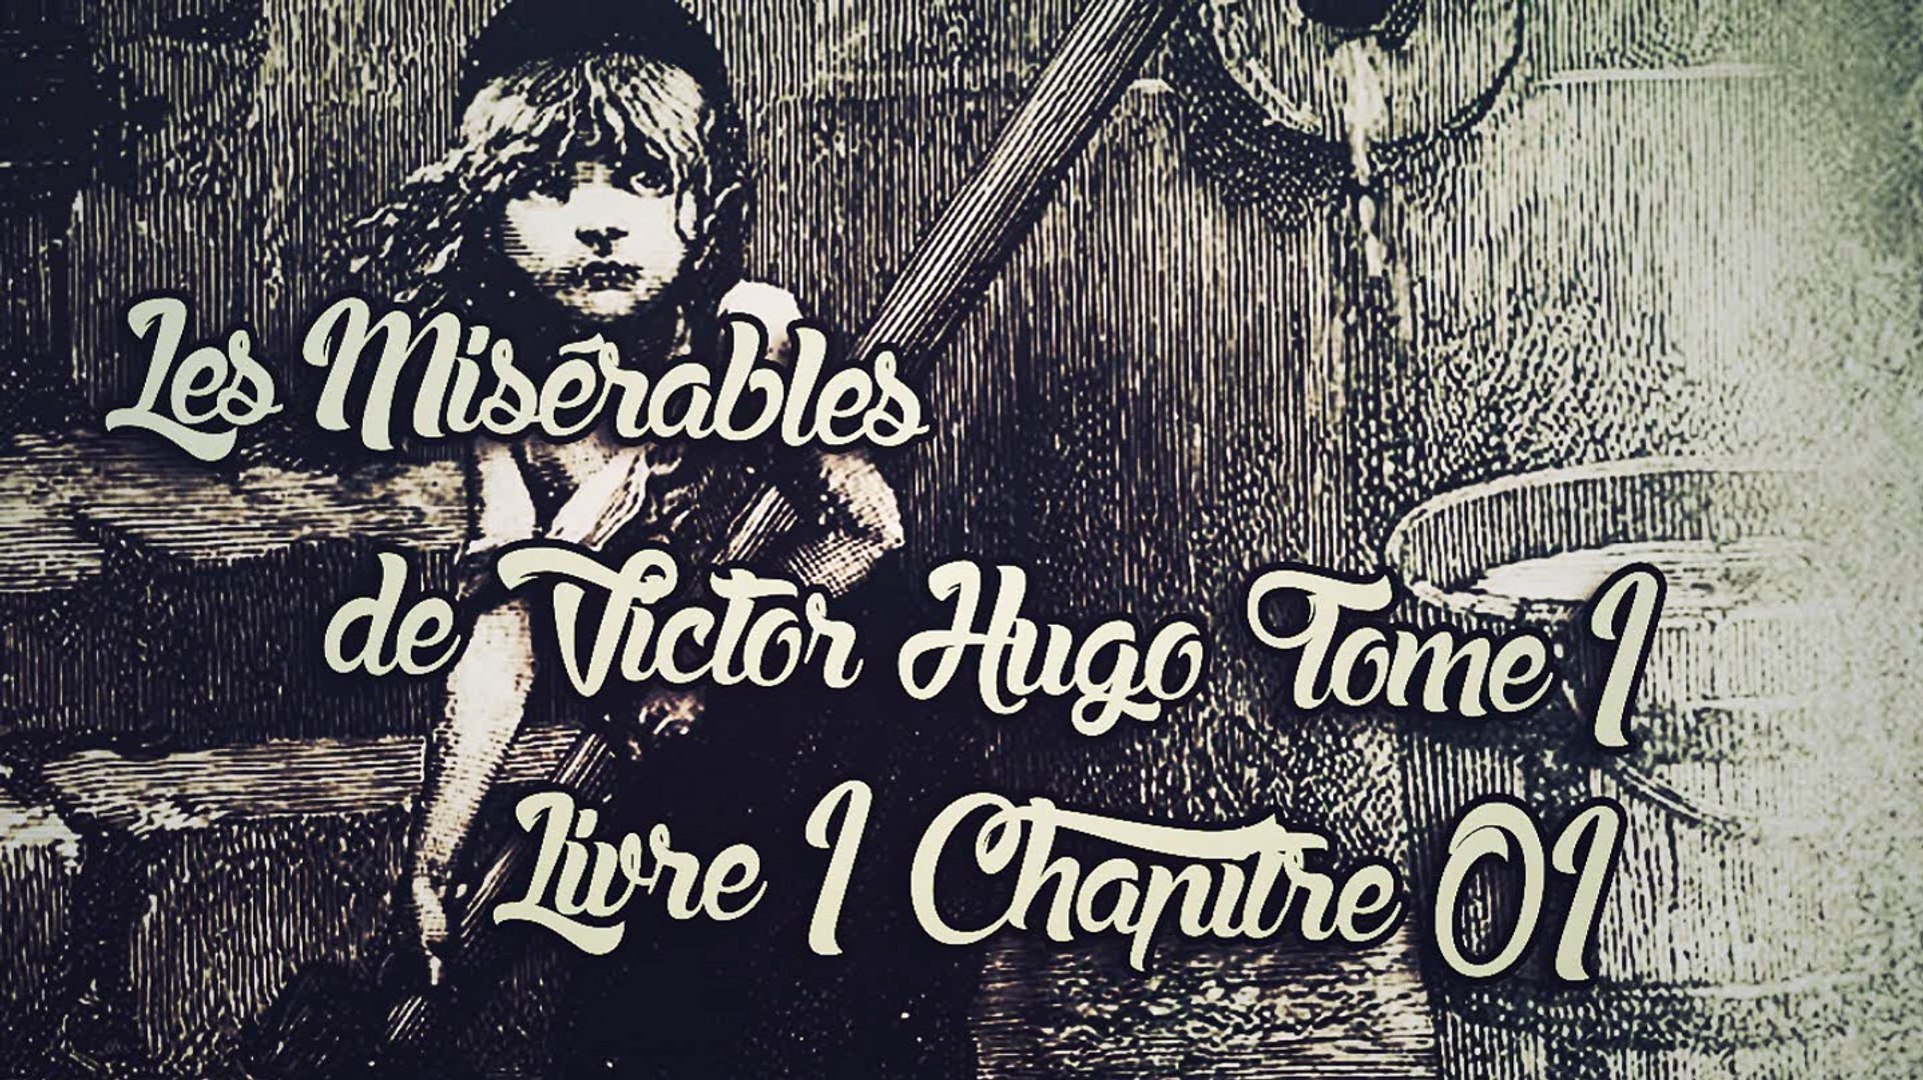 Les Misérables, de Victor Hugo Tome 1 , Livre 1 Chapitre 01 [ Livre Audio]  [Français] - Vidéo Dailymotion